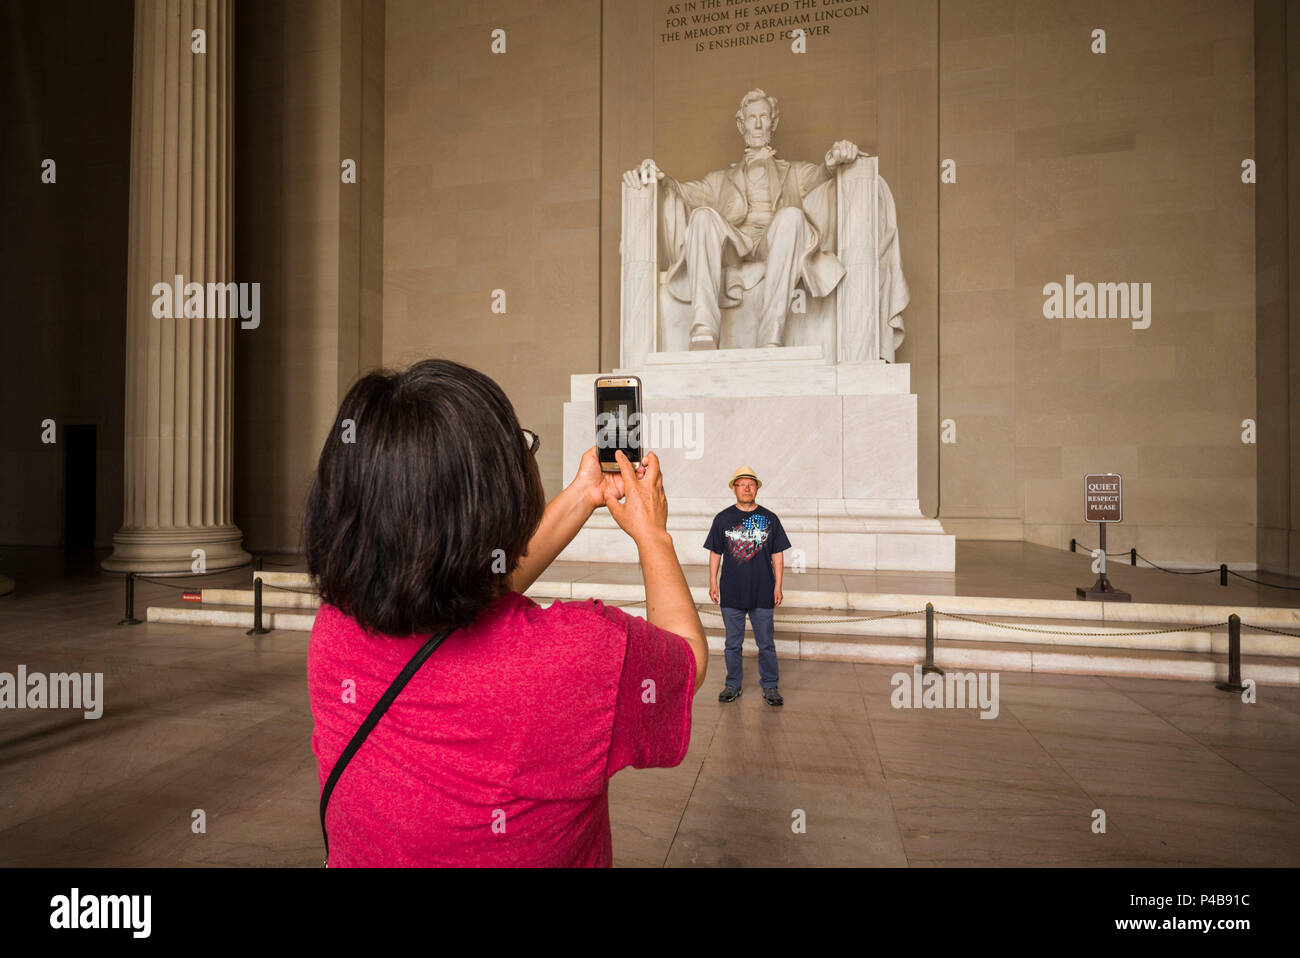 Stati Uniti d'America, il Distretto di Columbia, Washington, il Lincoln Memorial, statua del presidente Abraham Lincoln con i visitatori Foto Stock